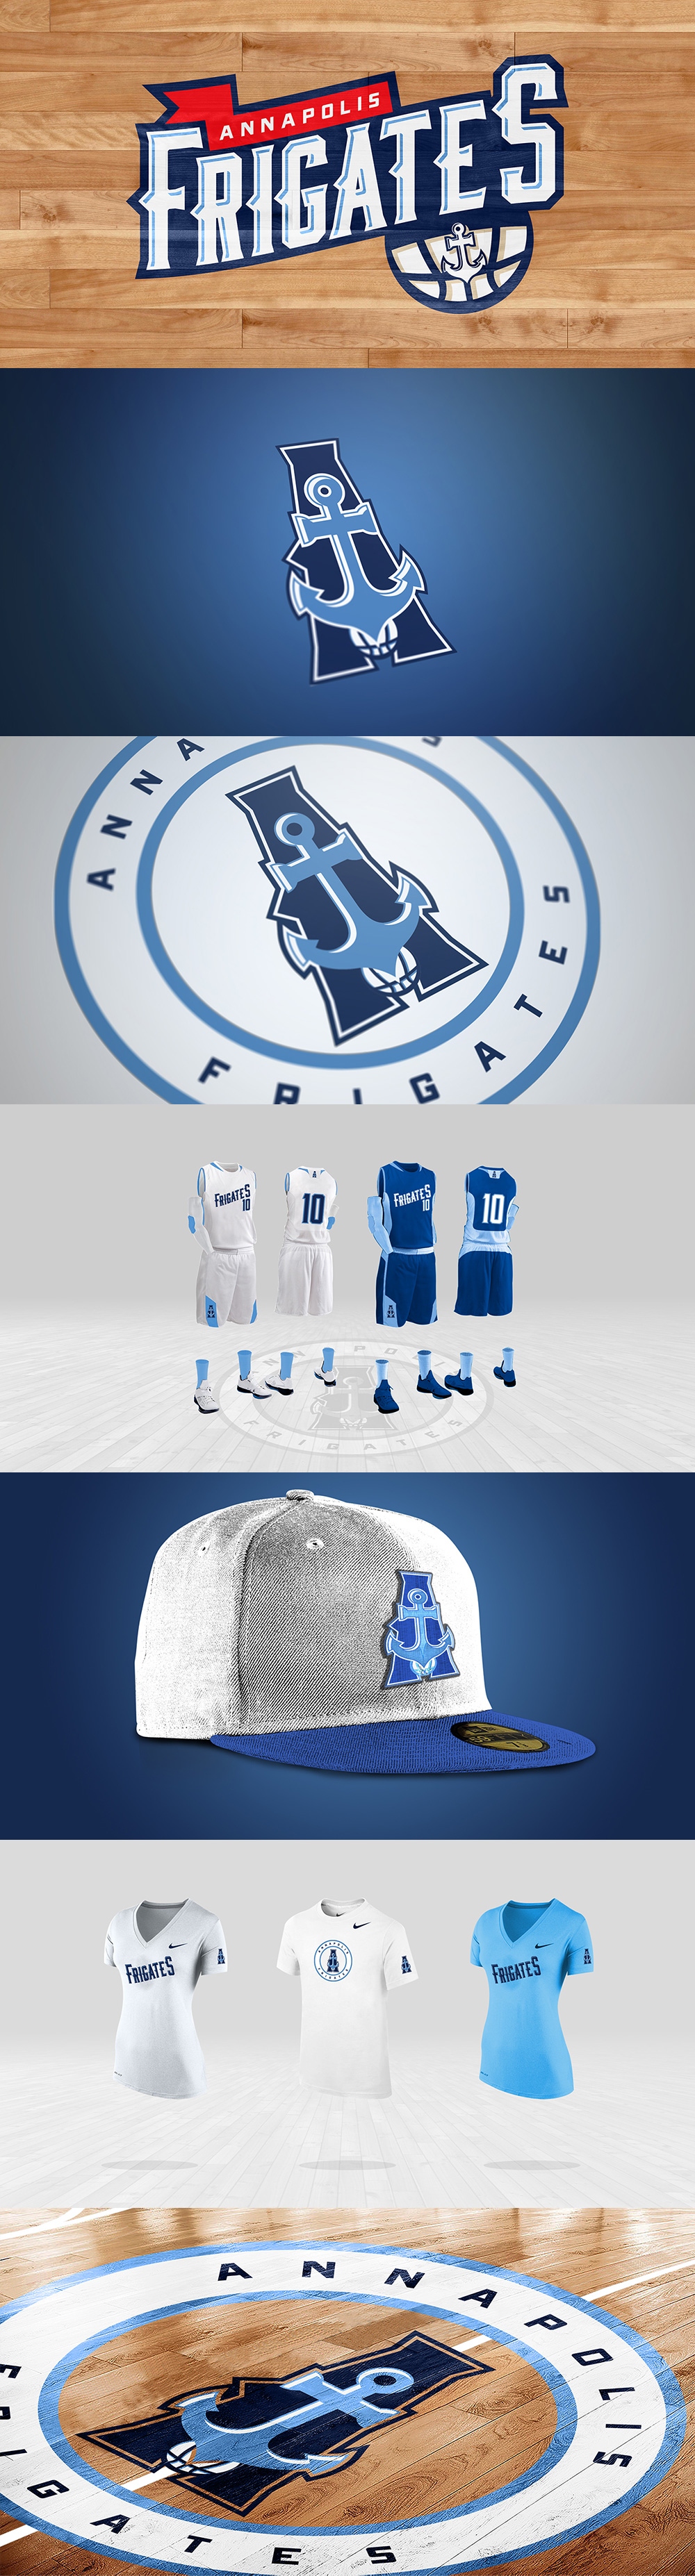 15个篮球队Logo和视觉形象设计欣赏